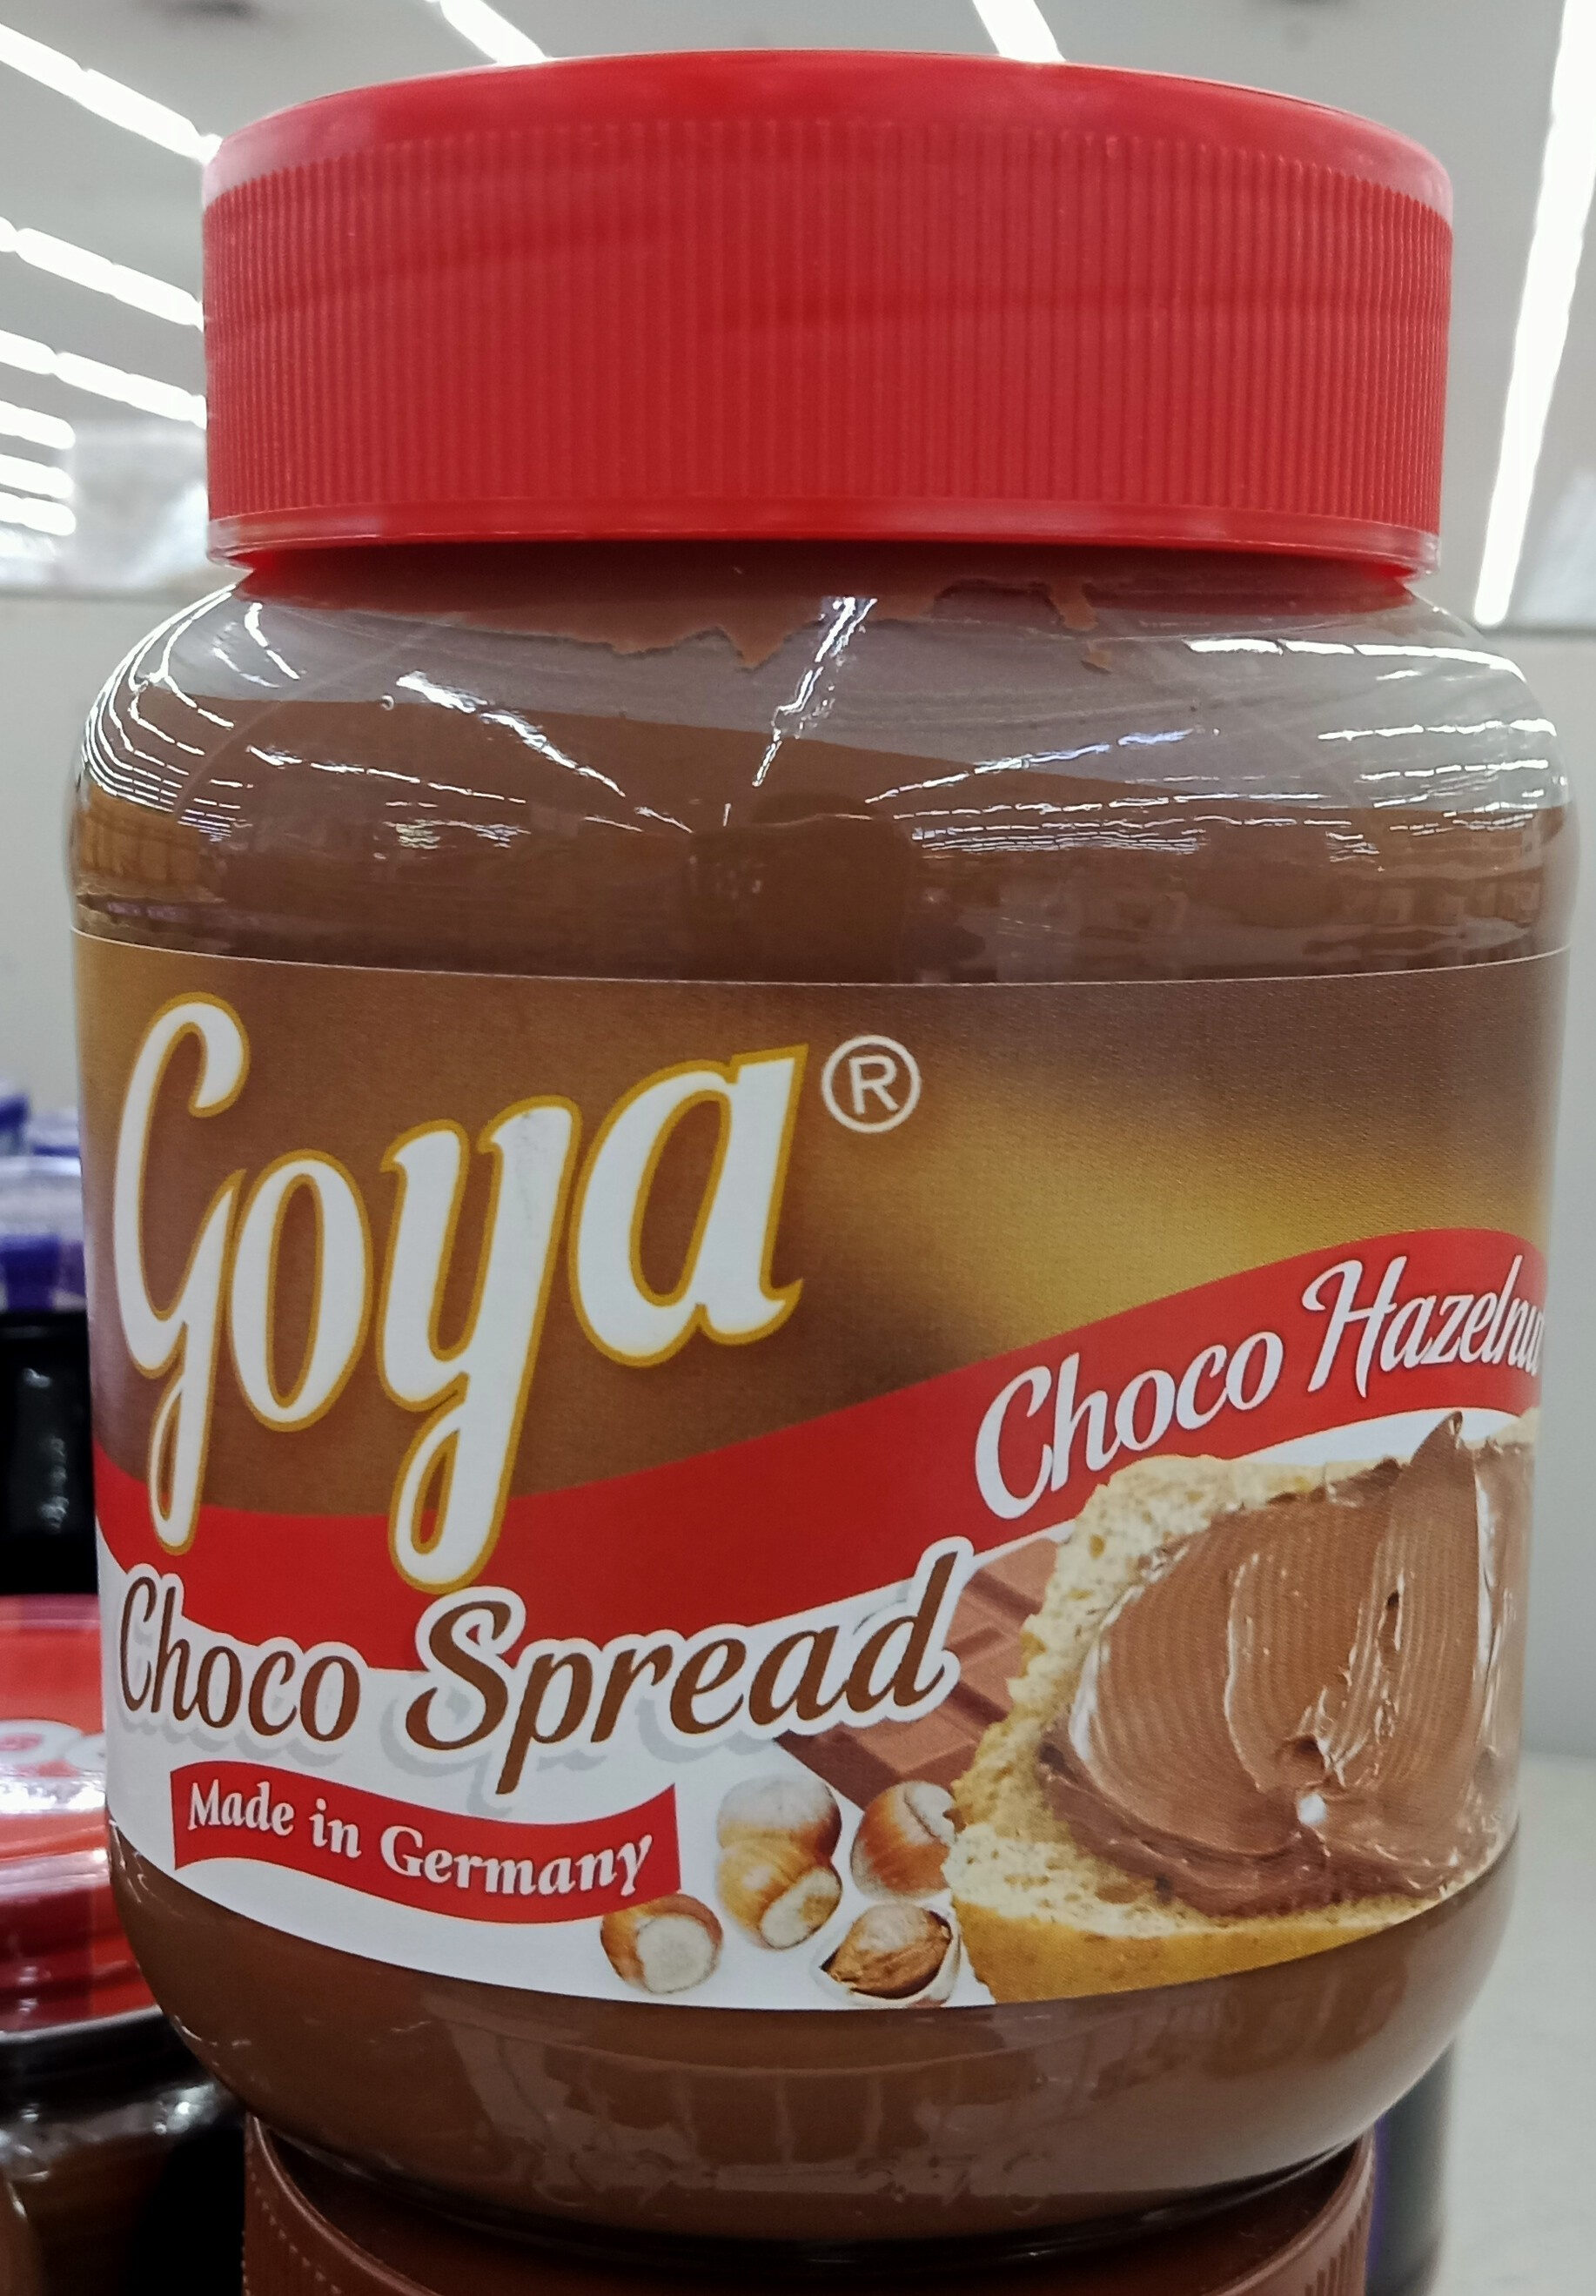 Goya Choco Hazelnut Choco Spread - Product